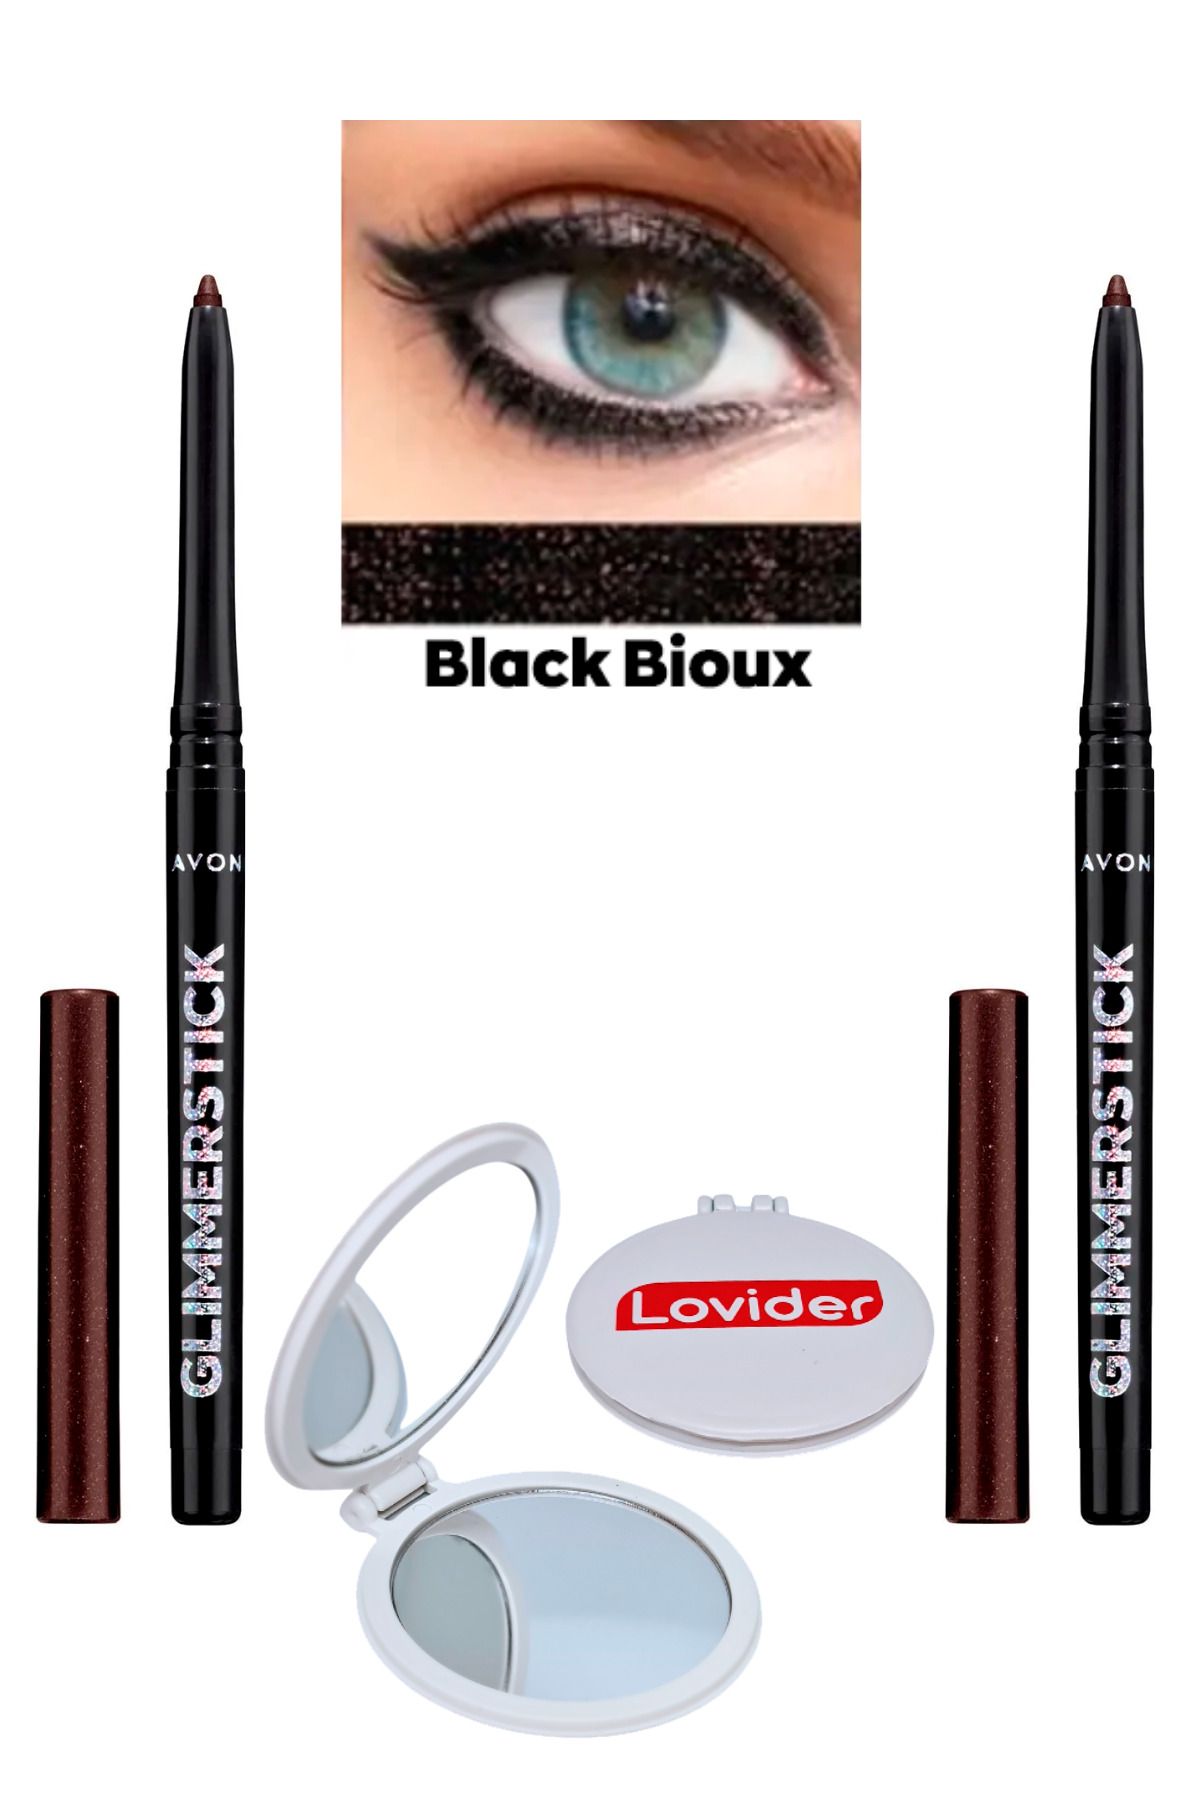 Avon Glimmerstick Asansörlü Göz Kalemi Pırıltılı - Black Bioux 2'li + Lovider Cep Aynası